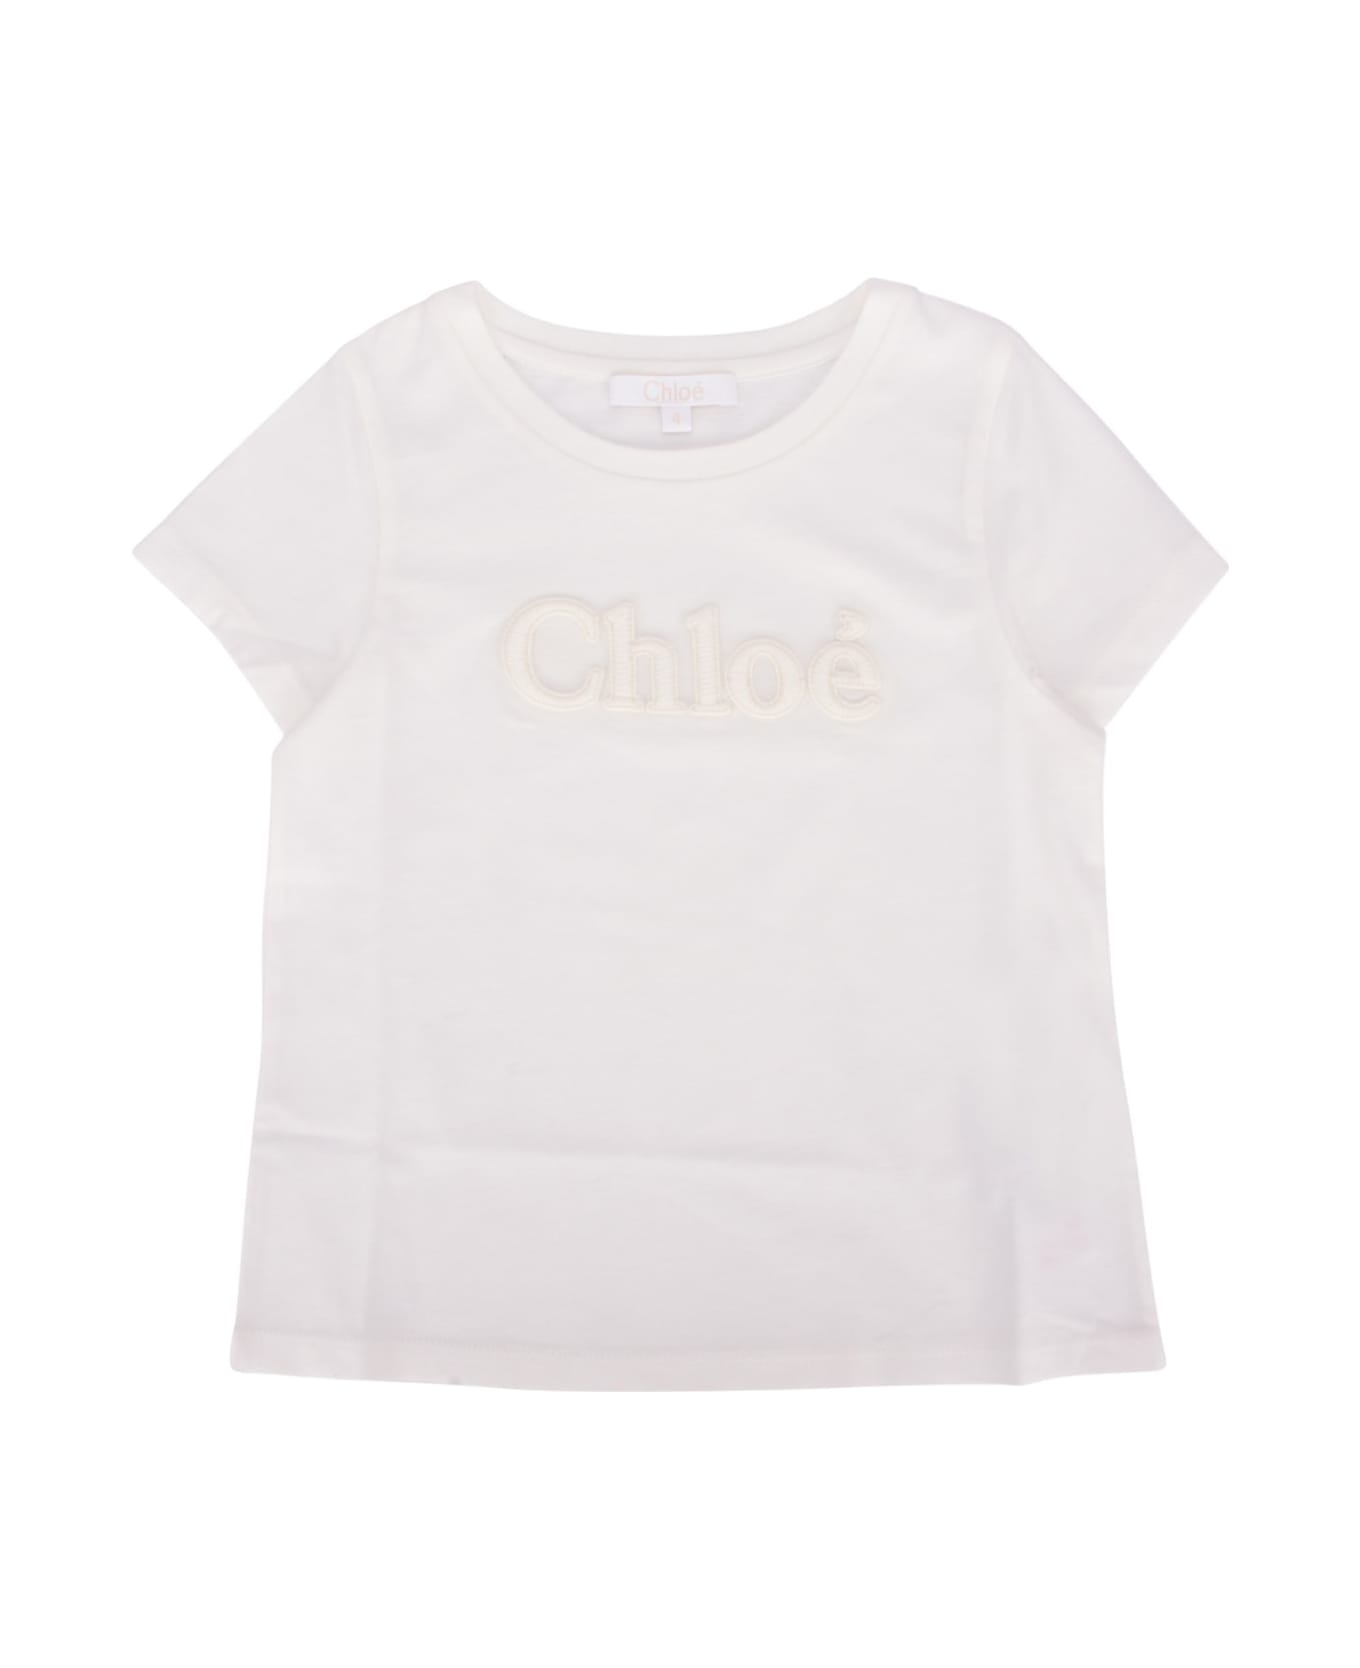 Chloé T-shirt - BIANCOSPORCO